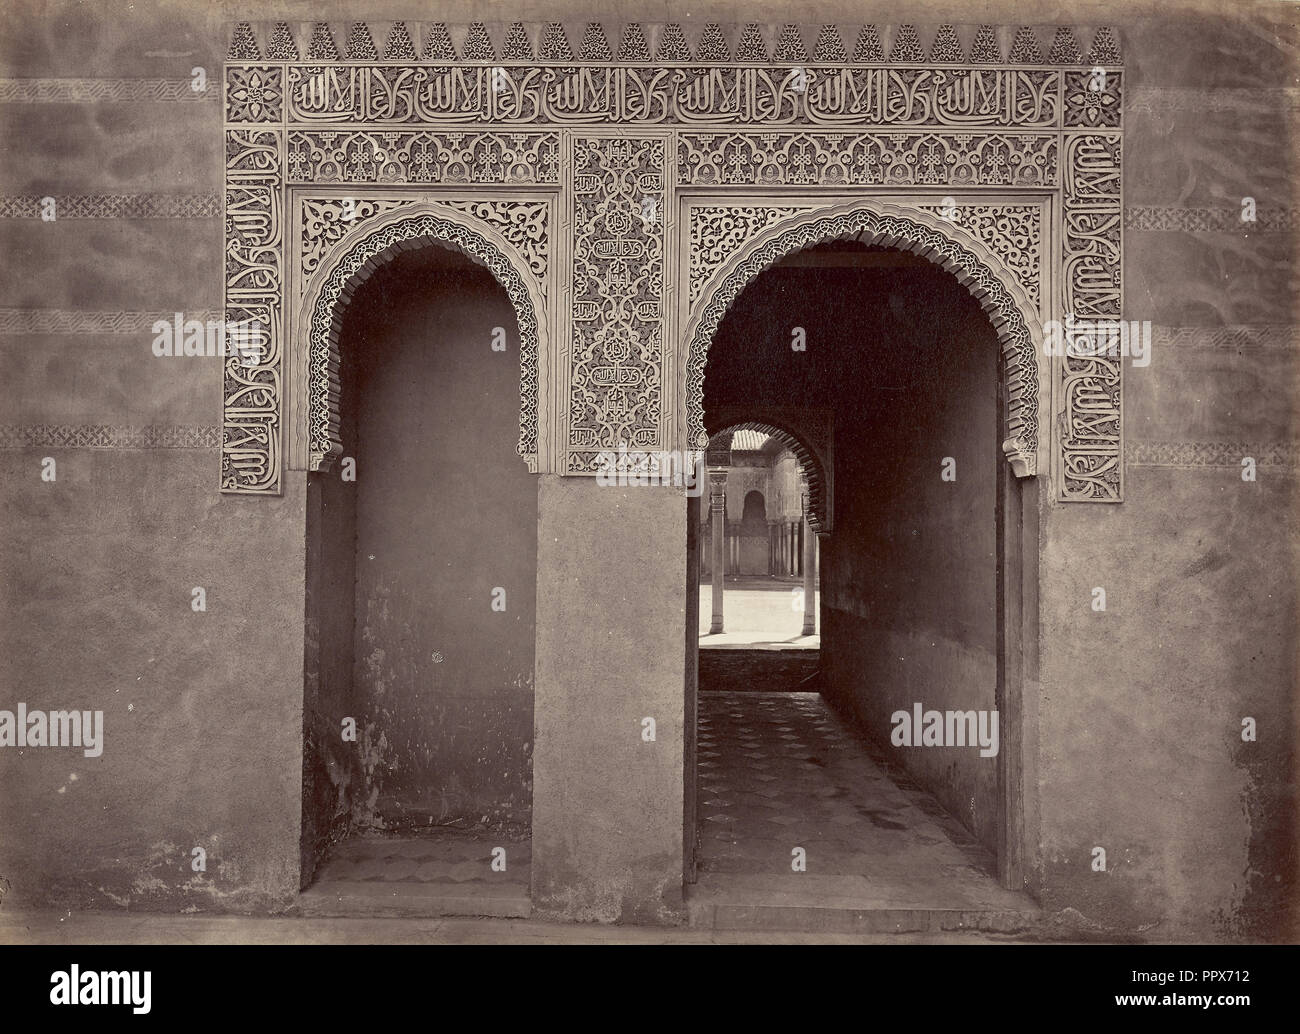 Puerta de entrada al patio de los leones, Alhambra, Granada; Juan Laurent, French, 1816 - 1892, Granada, Spain; 1875; Albumen Stock Photo